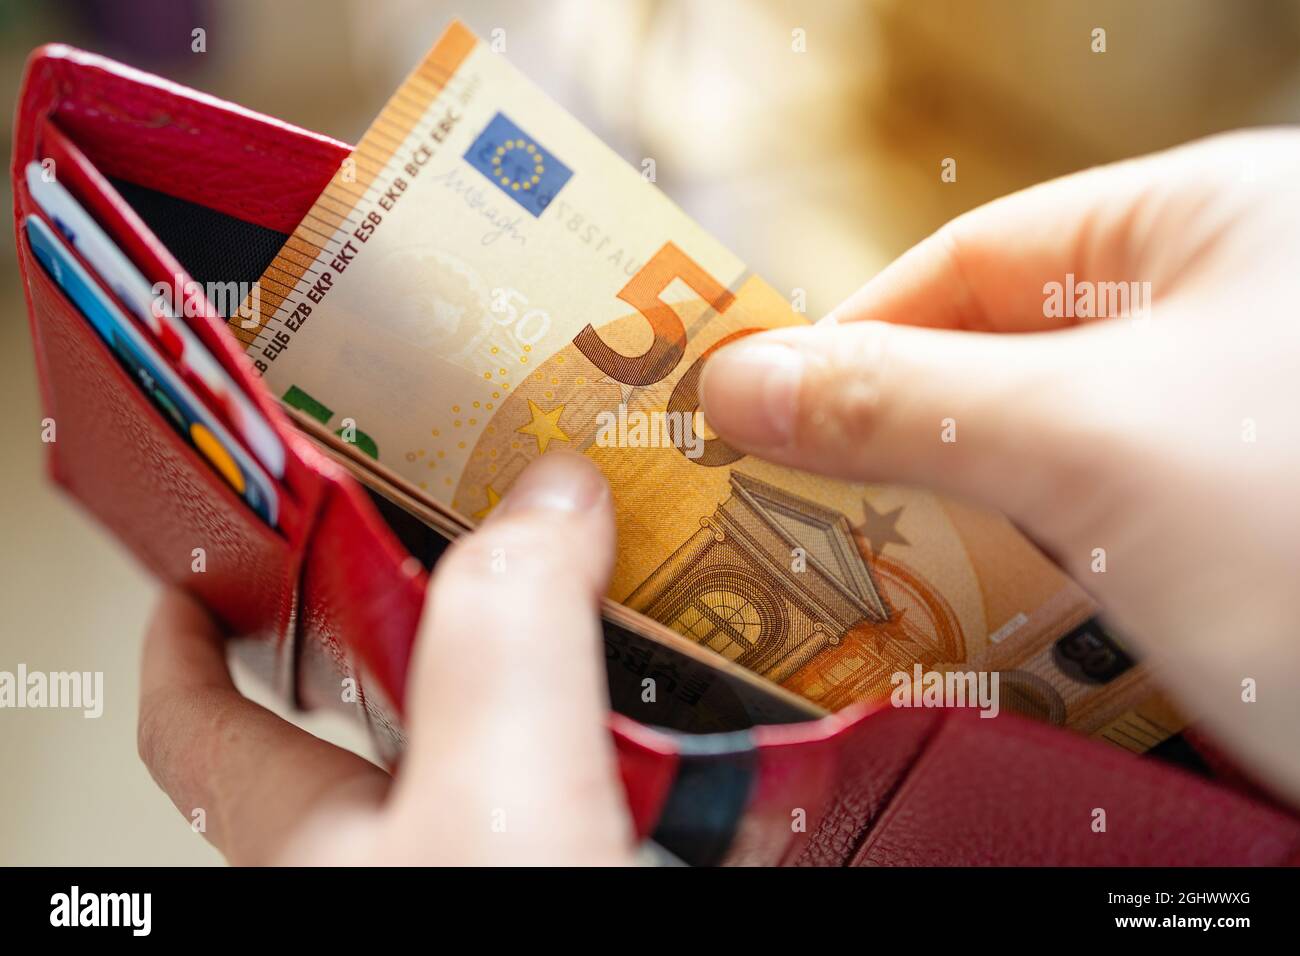 Personne qui prend de l'argent en euros de son portefeuille de poche. Homme comptant de l'argent, concept d'économie, distribution d'argent Banque D'Images